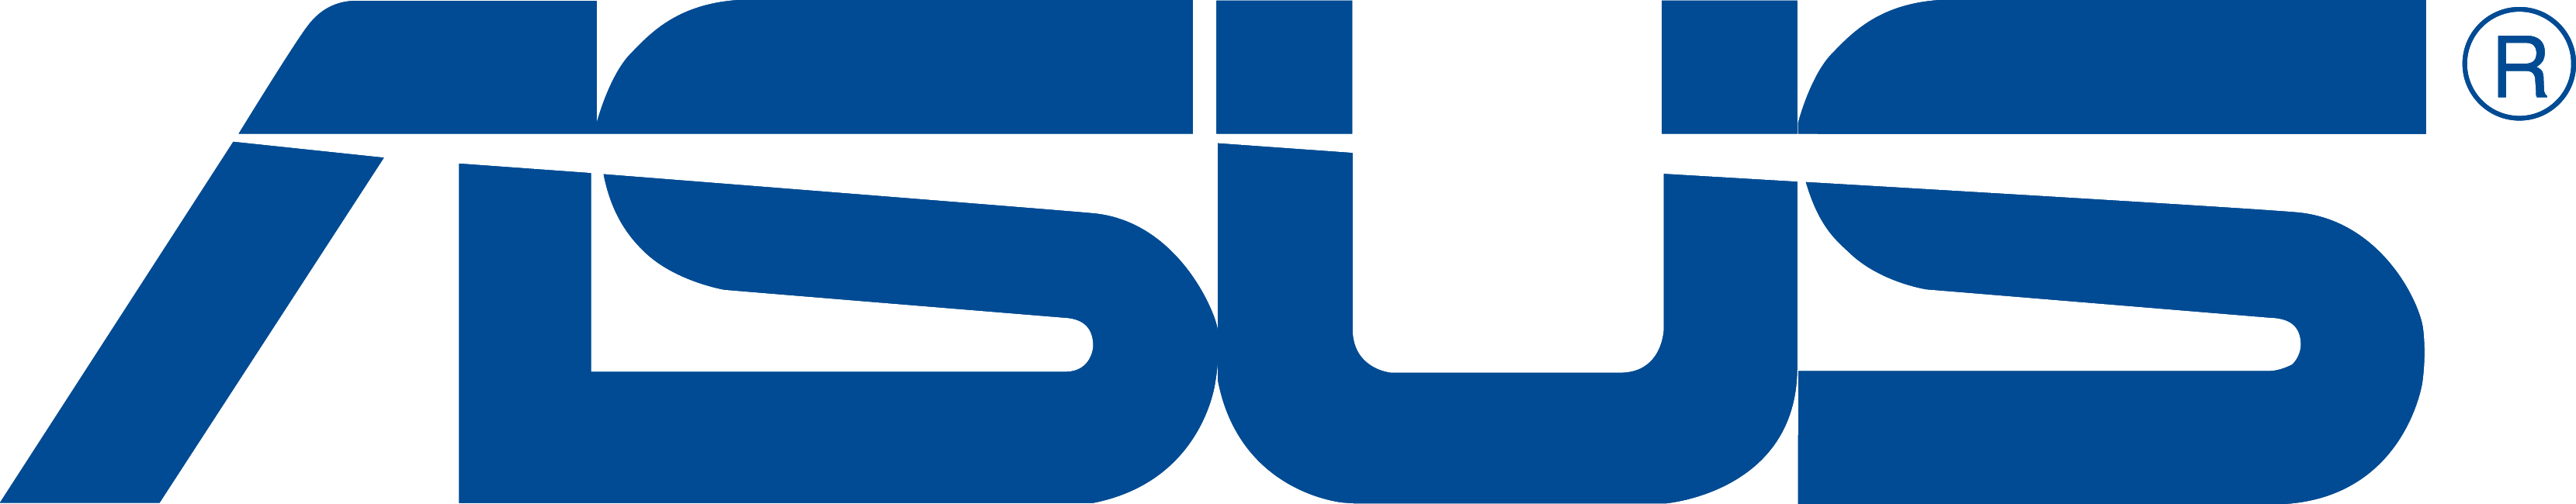 Asus Logo [asus.com]